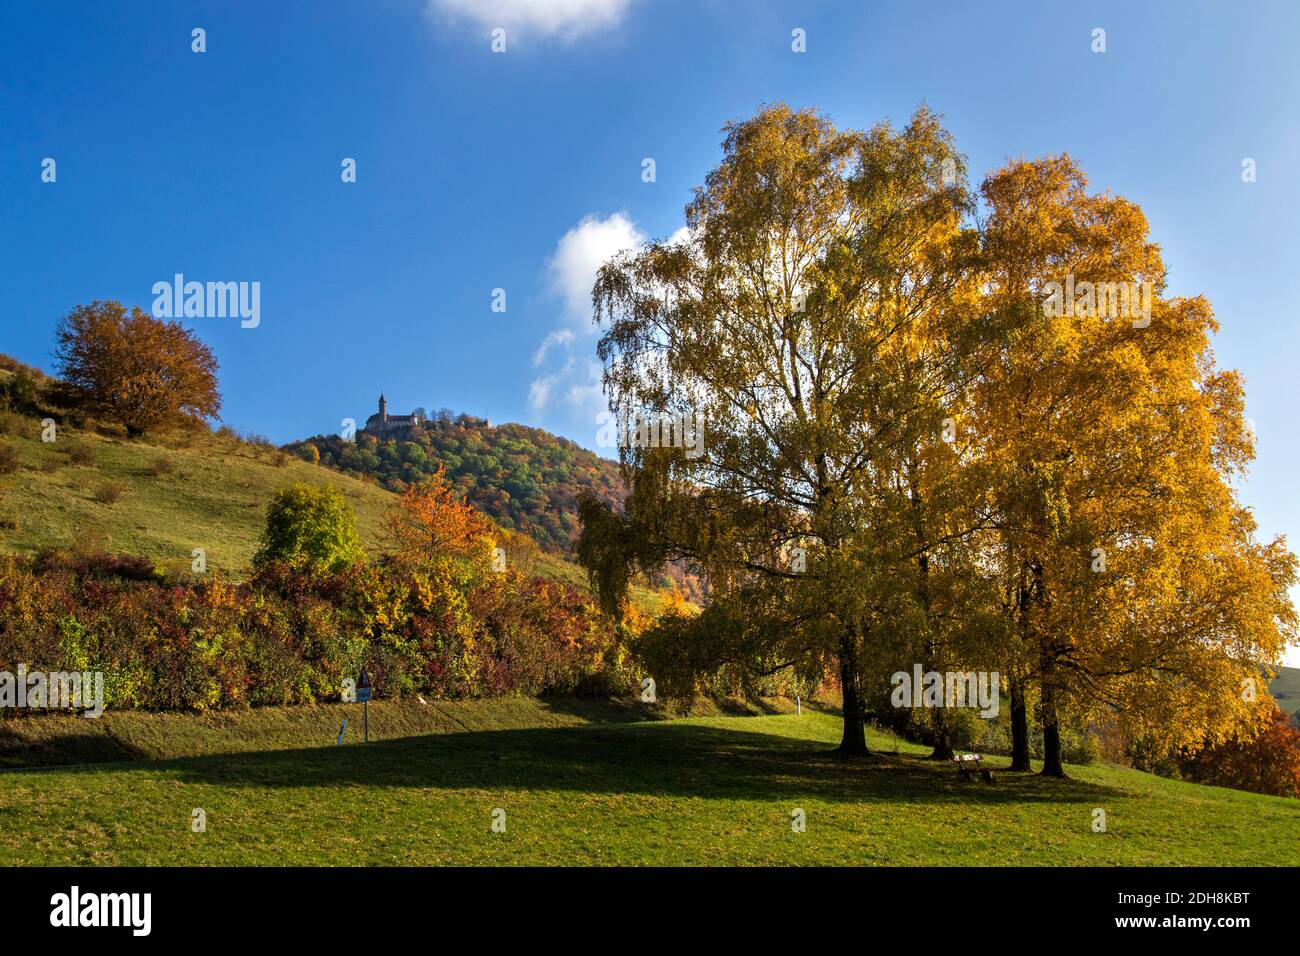 Herbststimmung an der Burg Teck, Owen, Schwäbische Alb, Deutschland Stock Photo